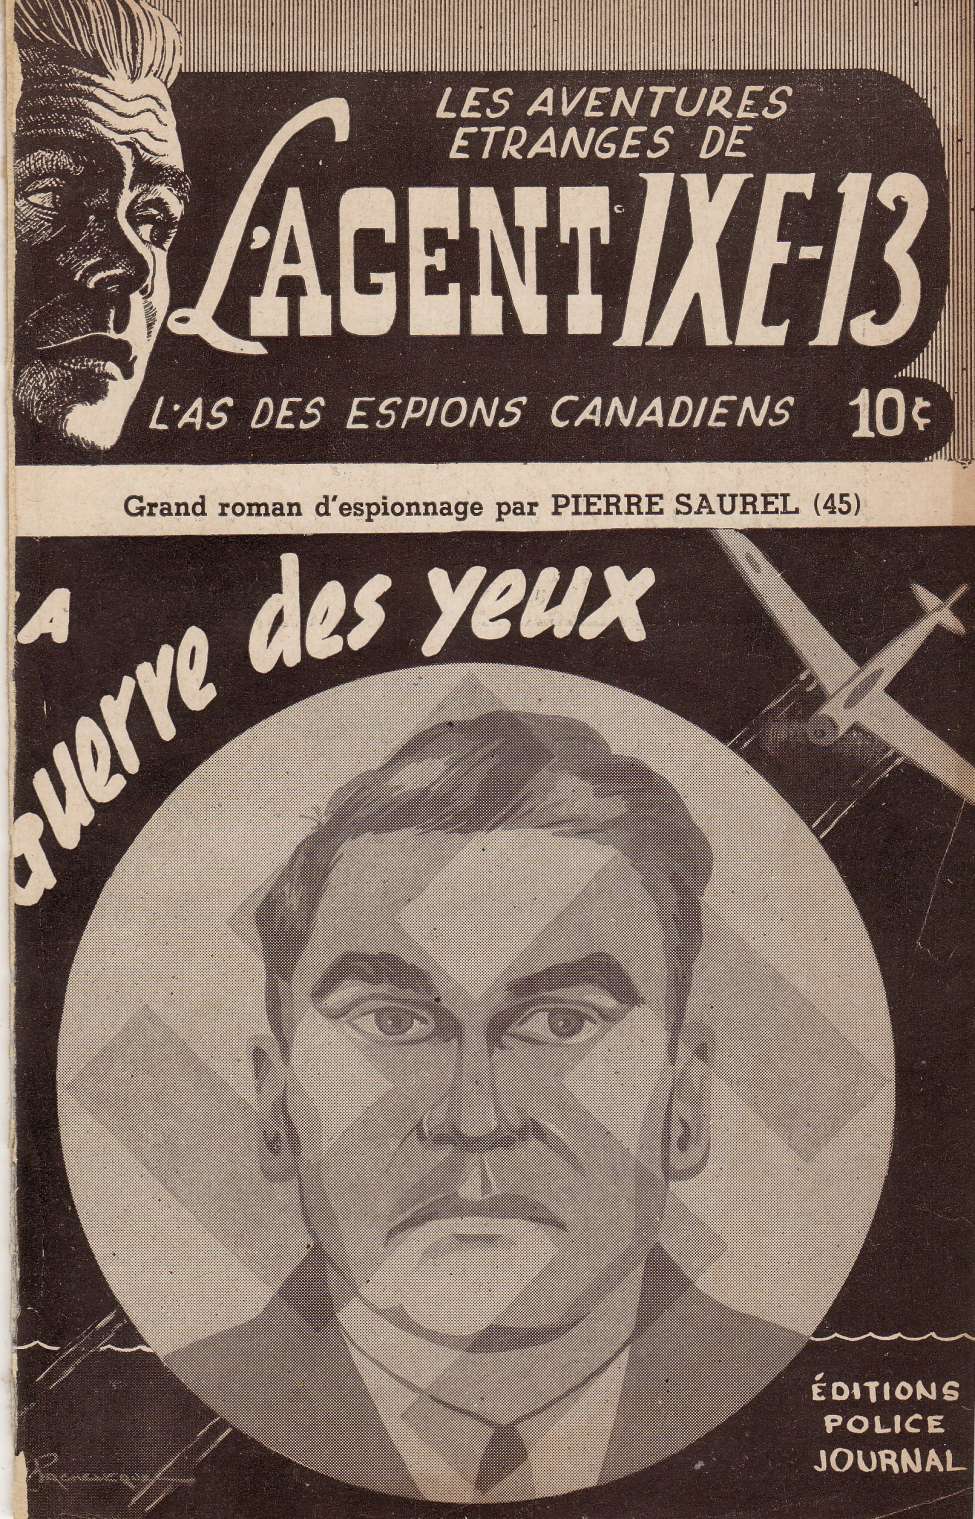 Comic Book Cover For L'Agent IXE-13 v2 45 - La guerre des yeux